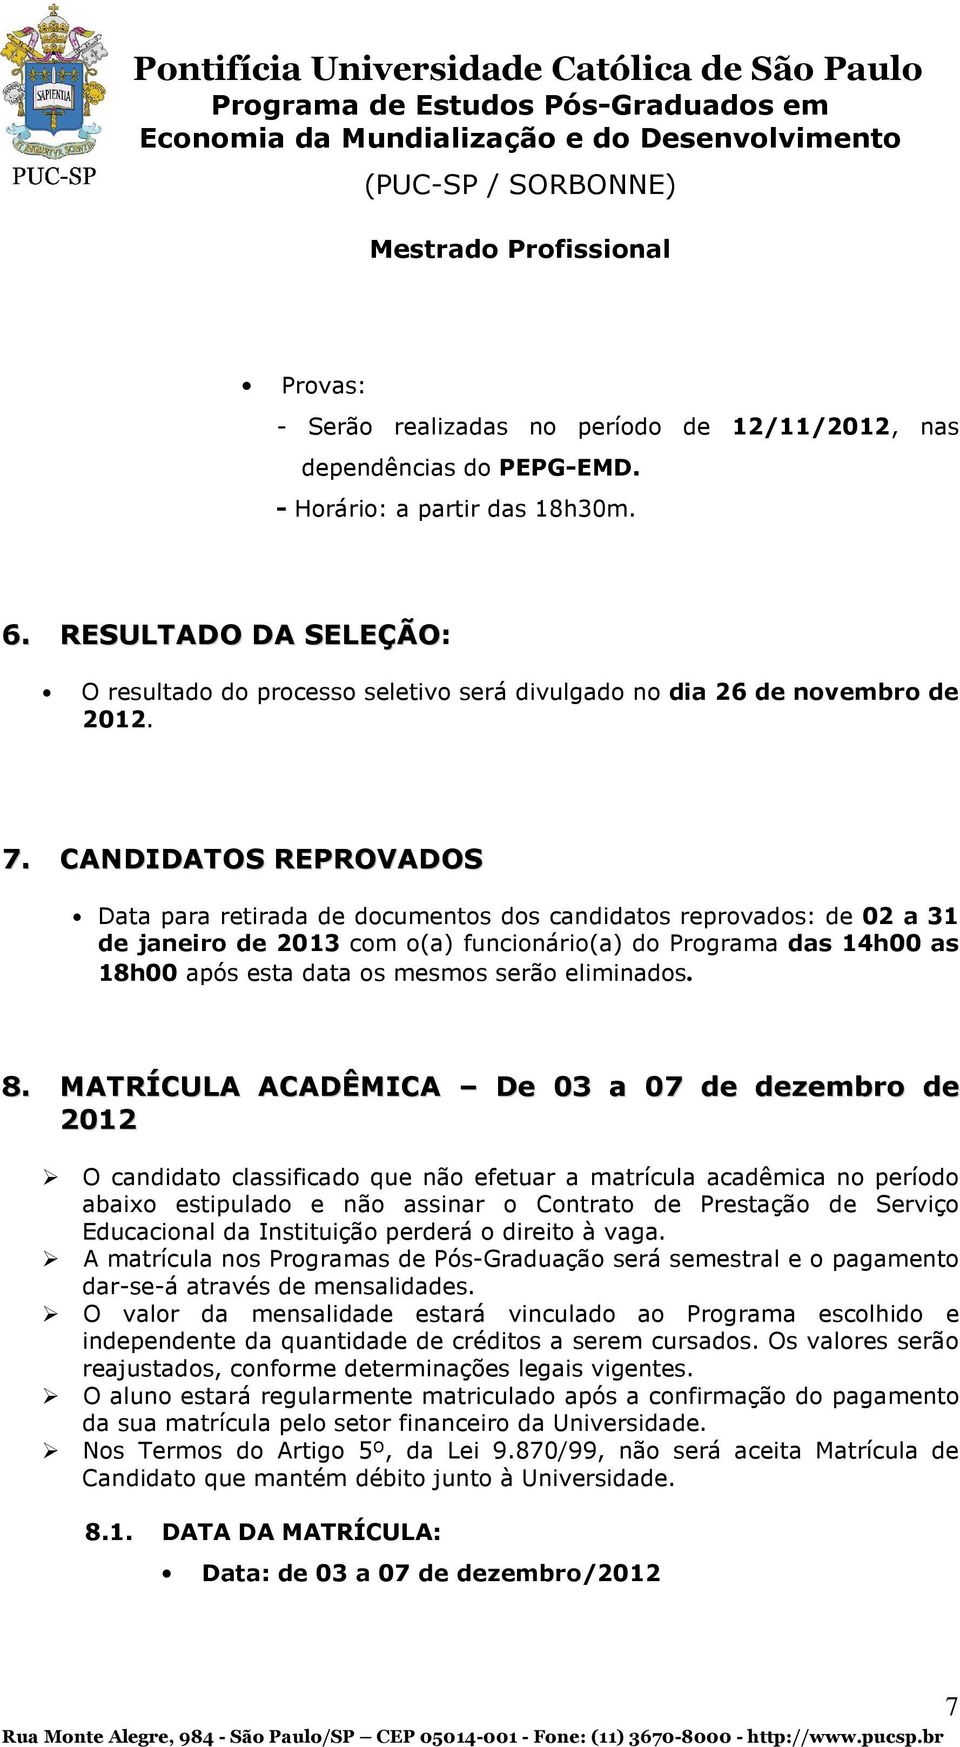 CANDIDATOS REPROVADOS Data para retirada de documentos dos candidatos reprovados: de 02 a 31 de janeiro de 2013 com o(a) funcionário(a) do Programa das 14h00 as 18h00 após esta data os mesmos serão